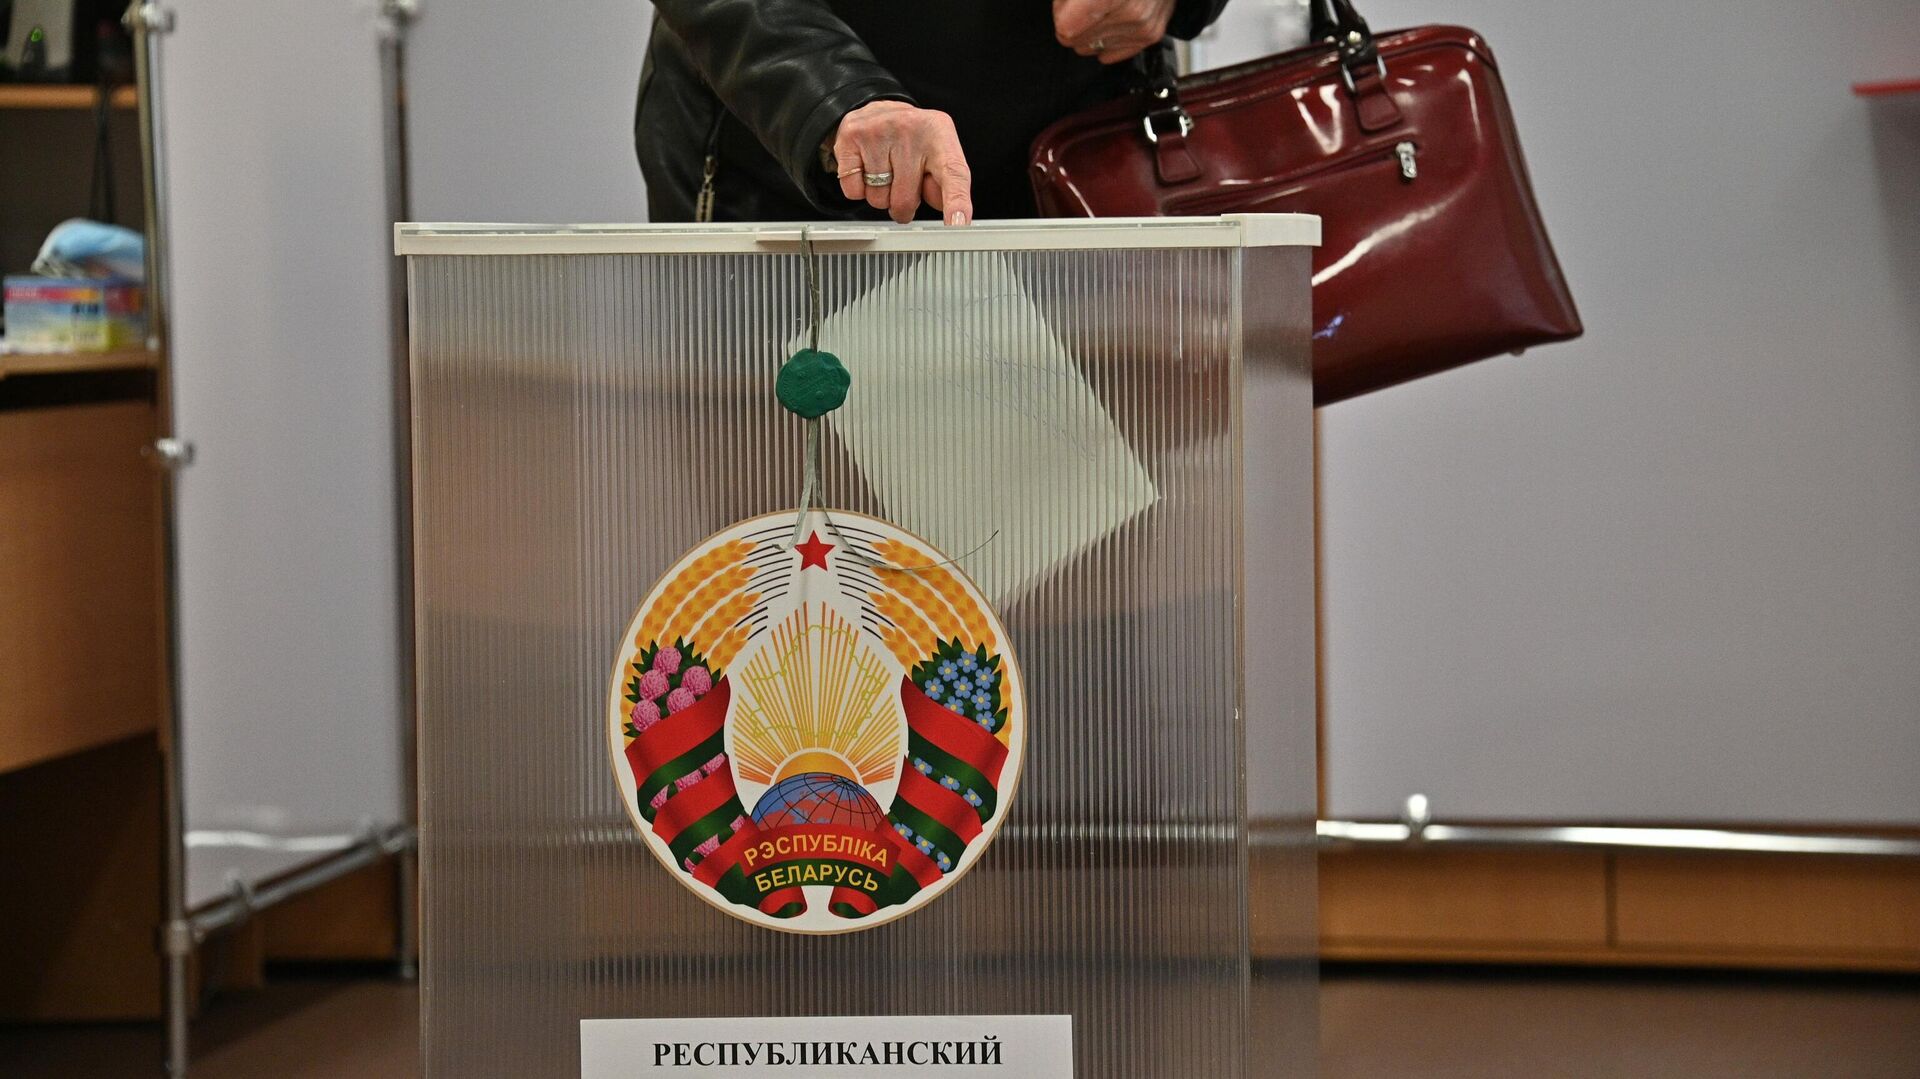 
Досрочное голосование на референдуме в Минске - Sputnik Беларусь, 1920, 25.02.2022